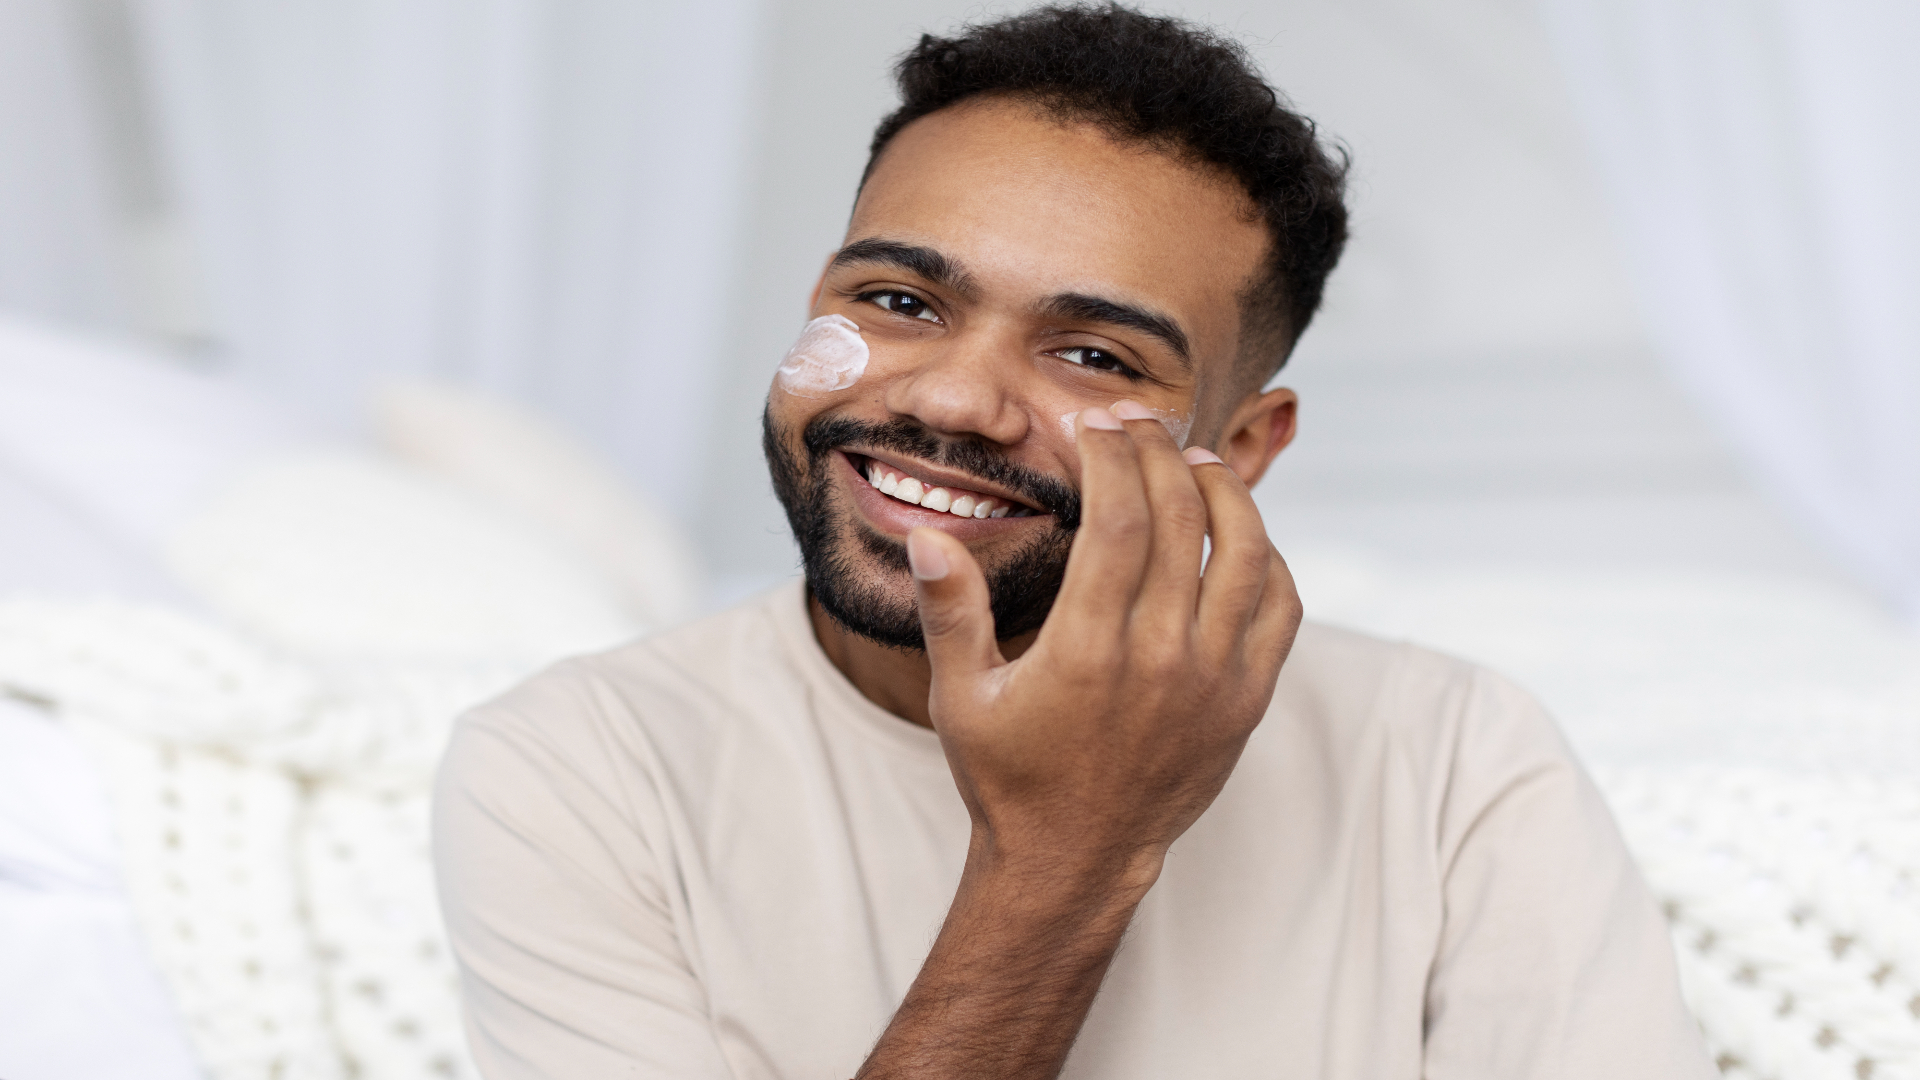 Foto de capa do artigo "Skincare masculino: quais produtos usar e como"